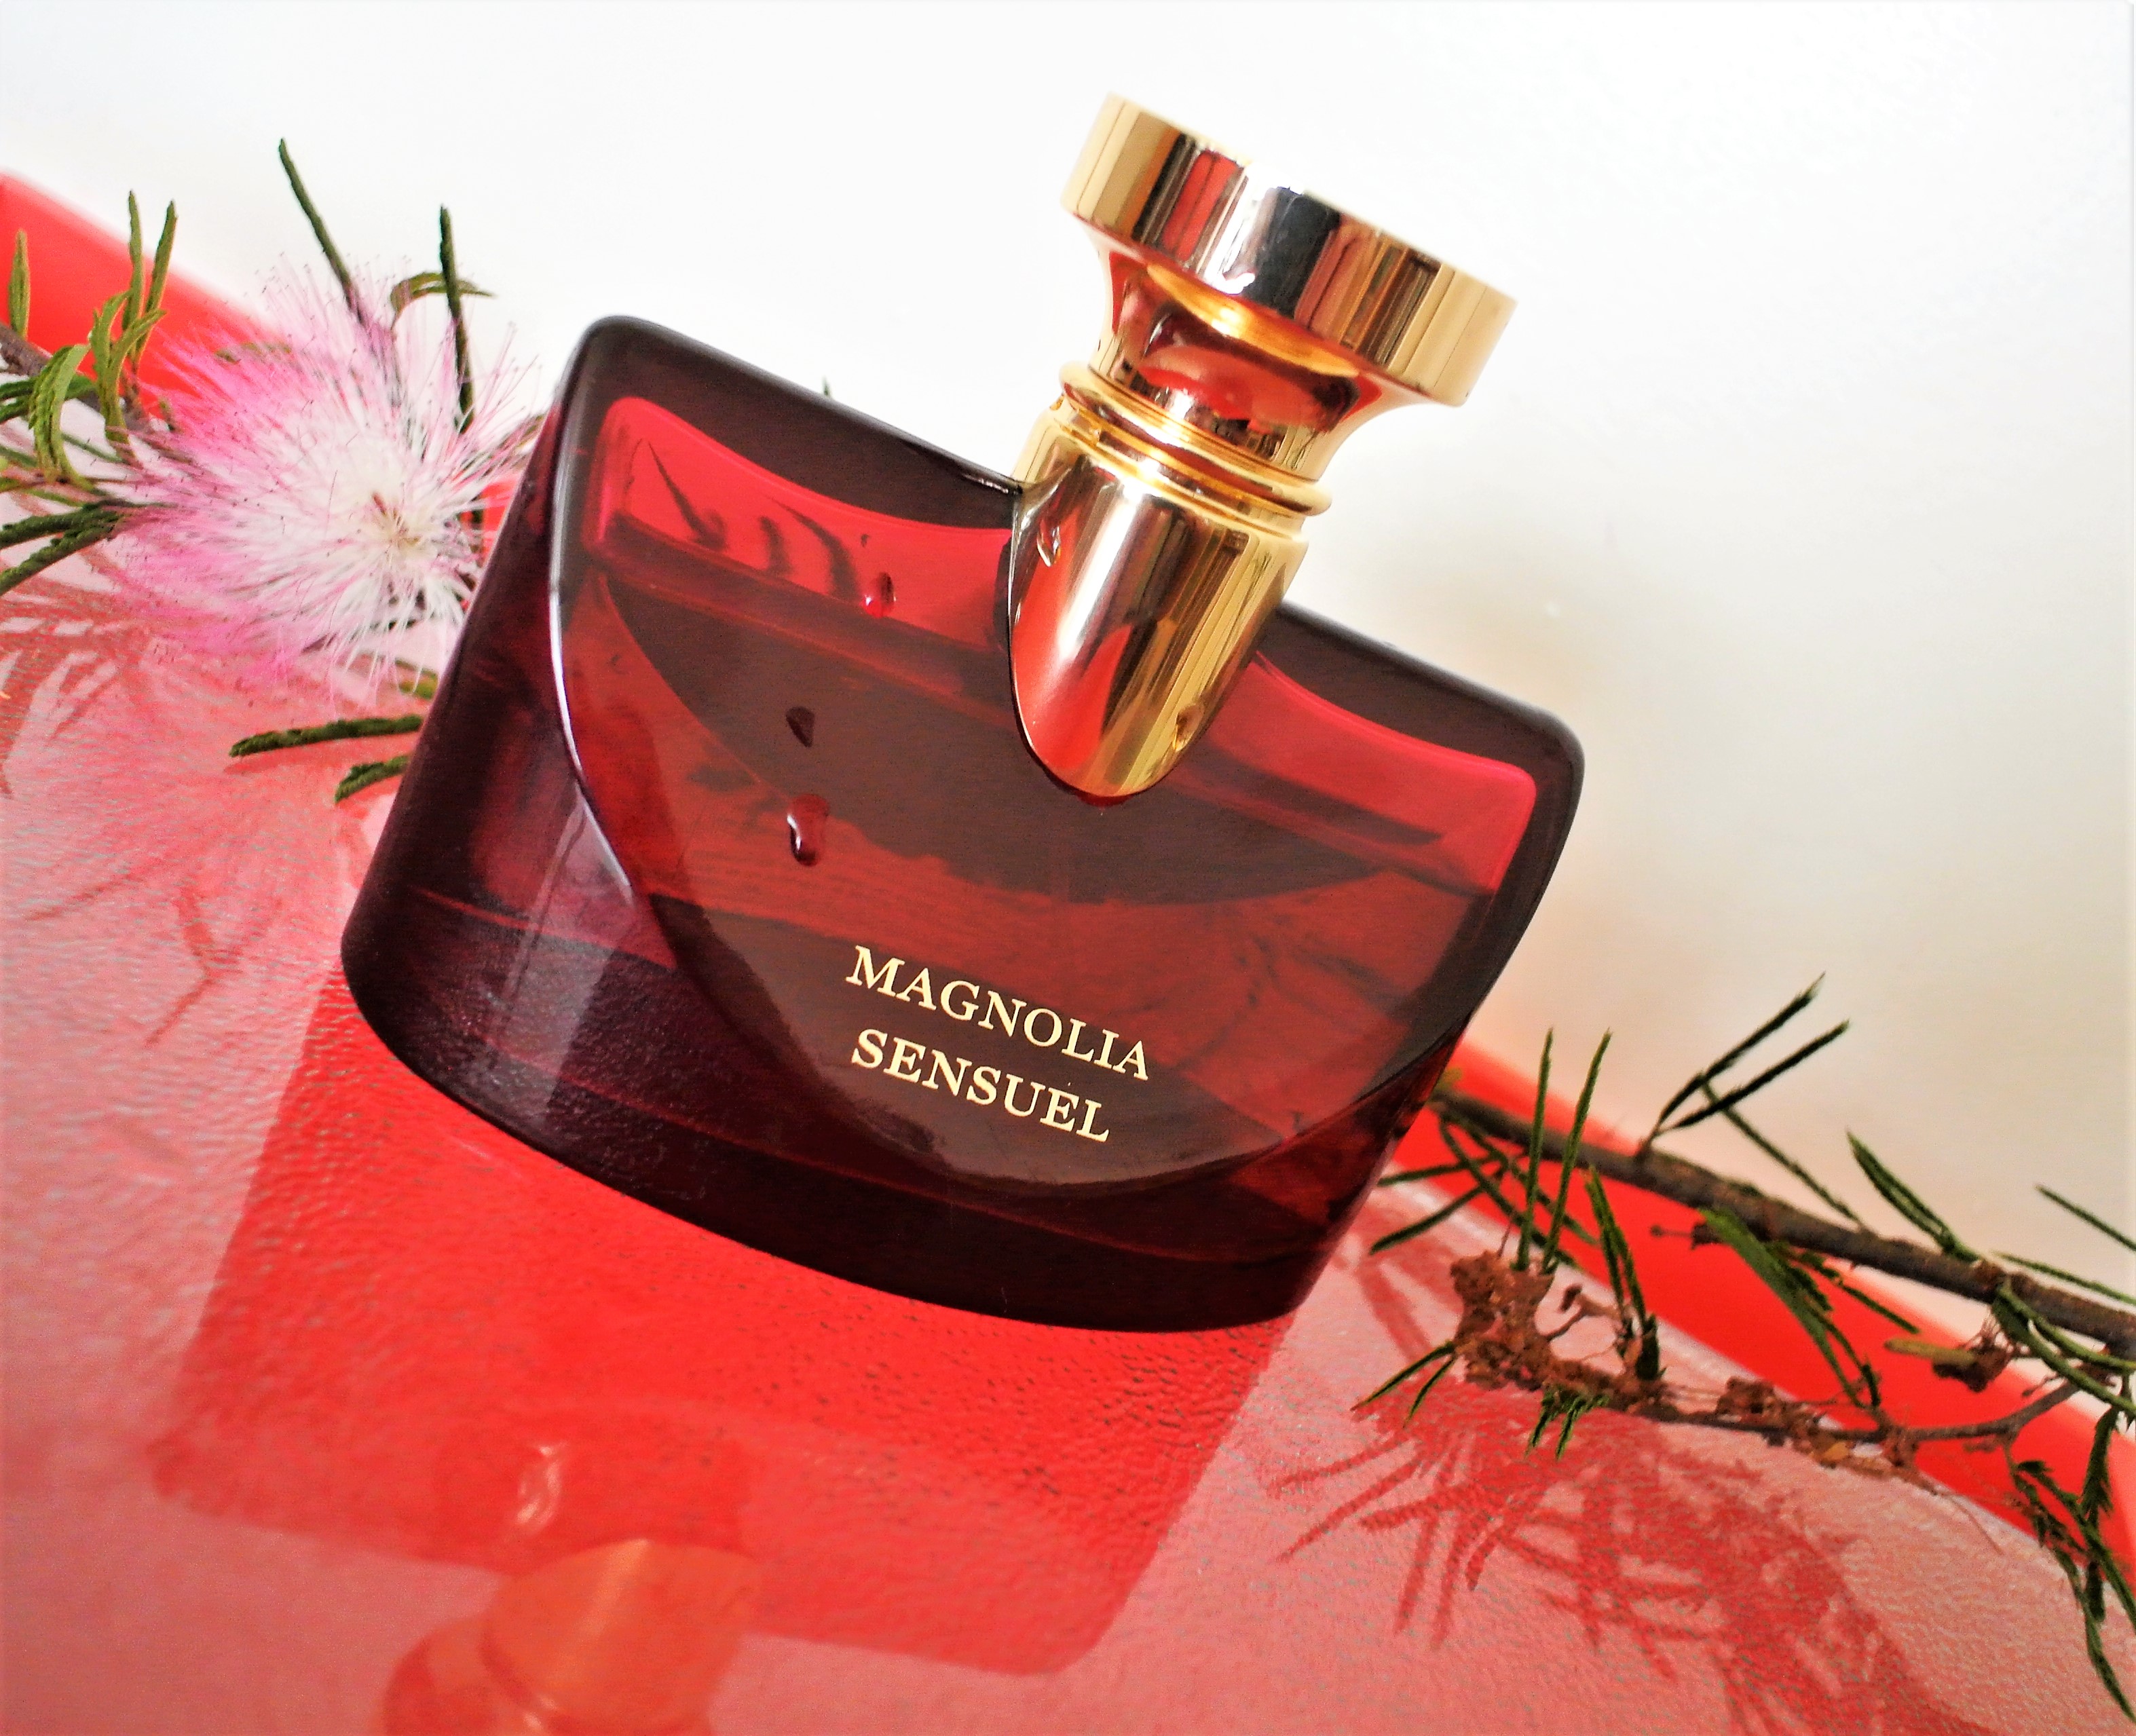 bvlgari splendida magnolia sensuel review